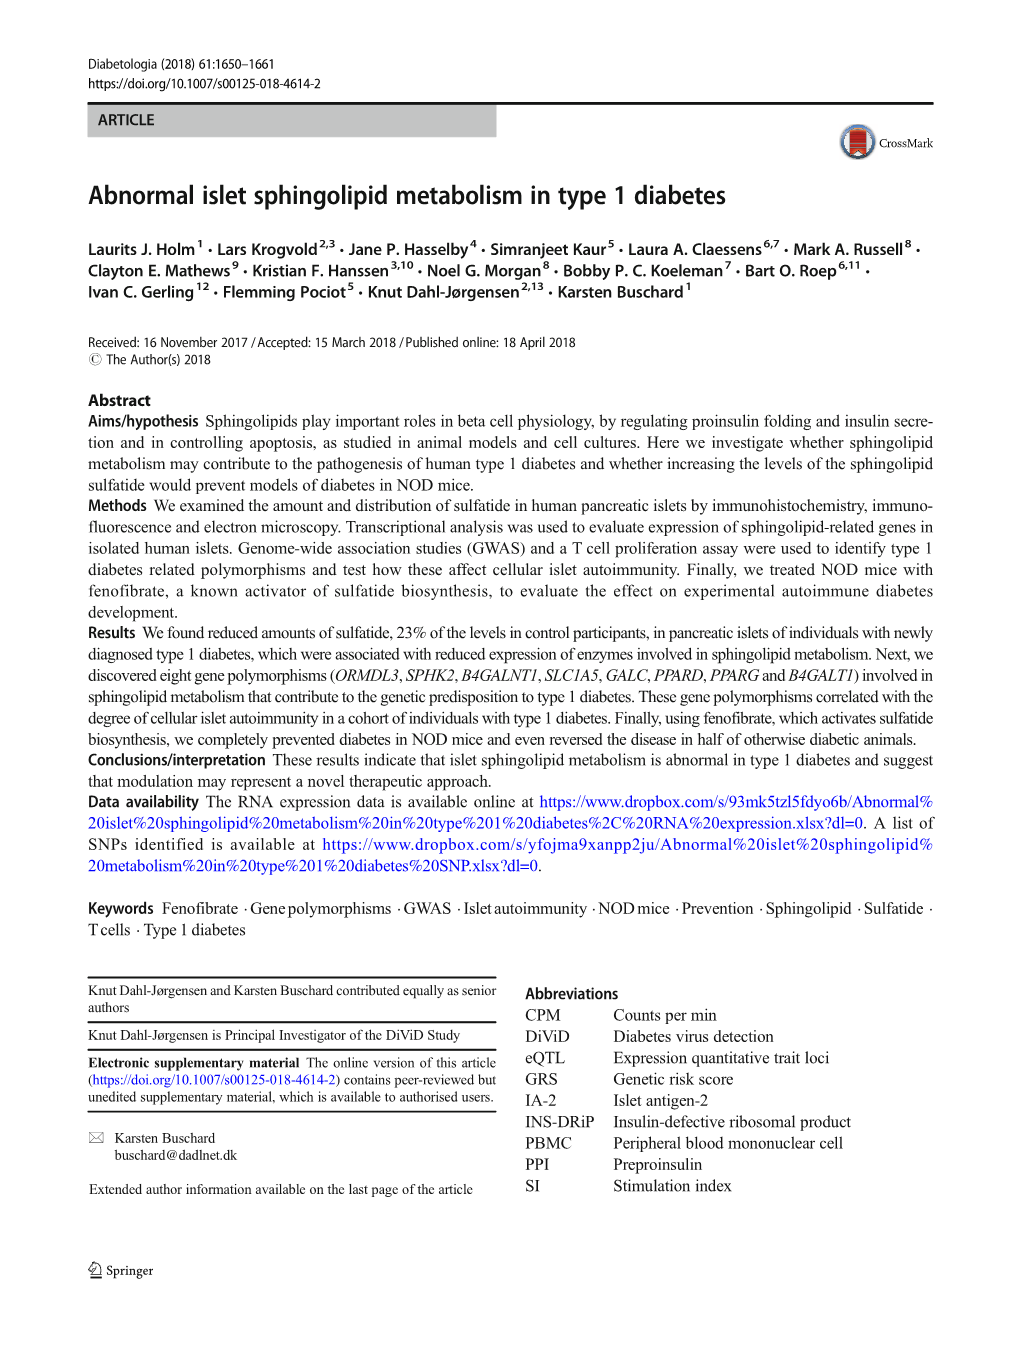 Abnormal Islet Sphingolipid Metabolism in Type 1 Diabetes